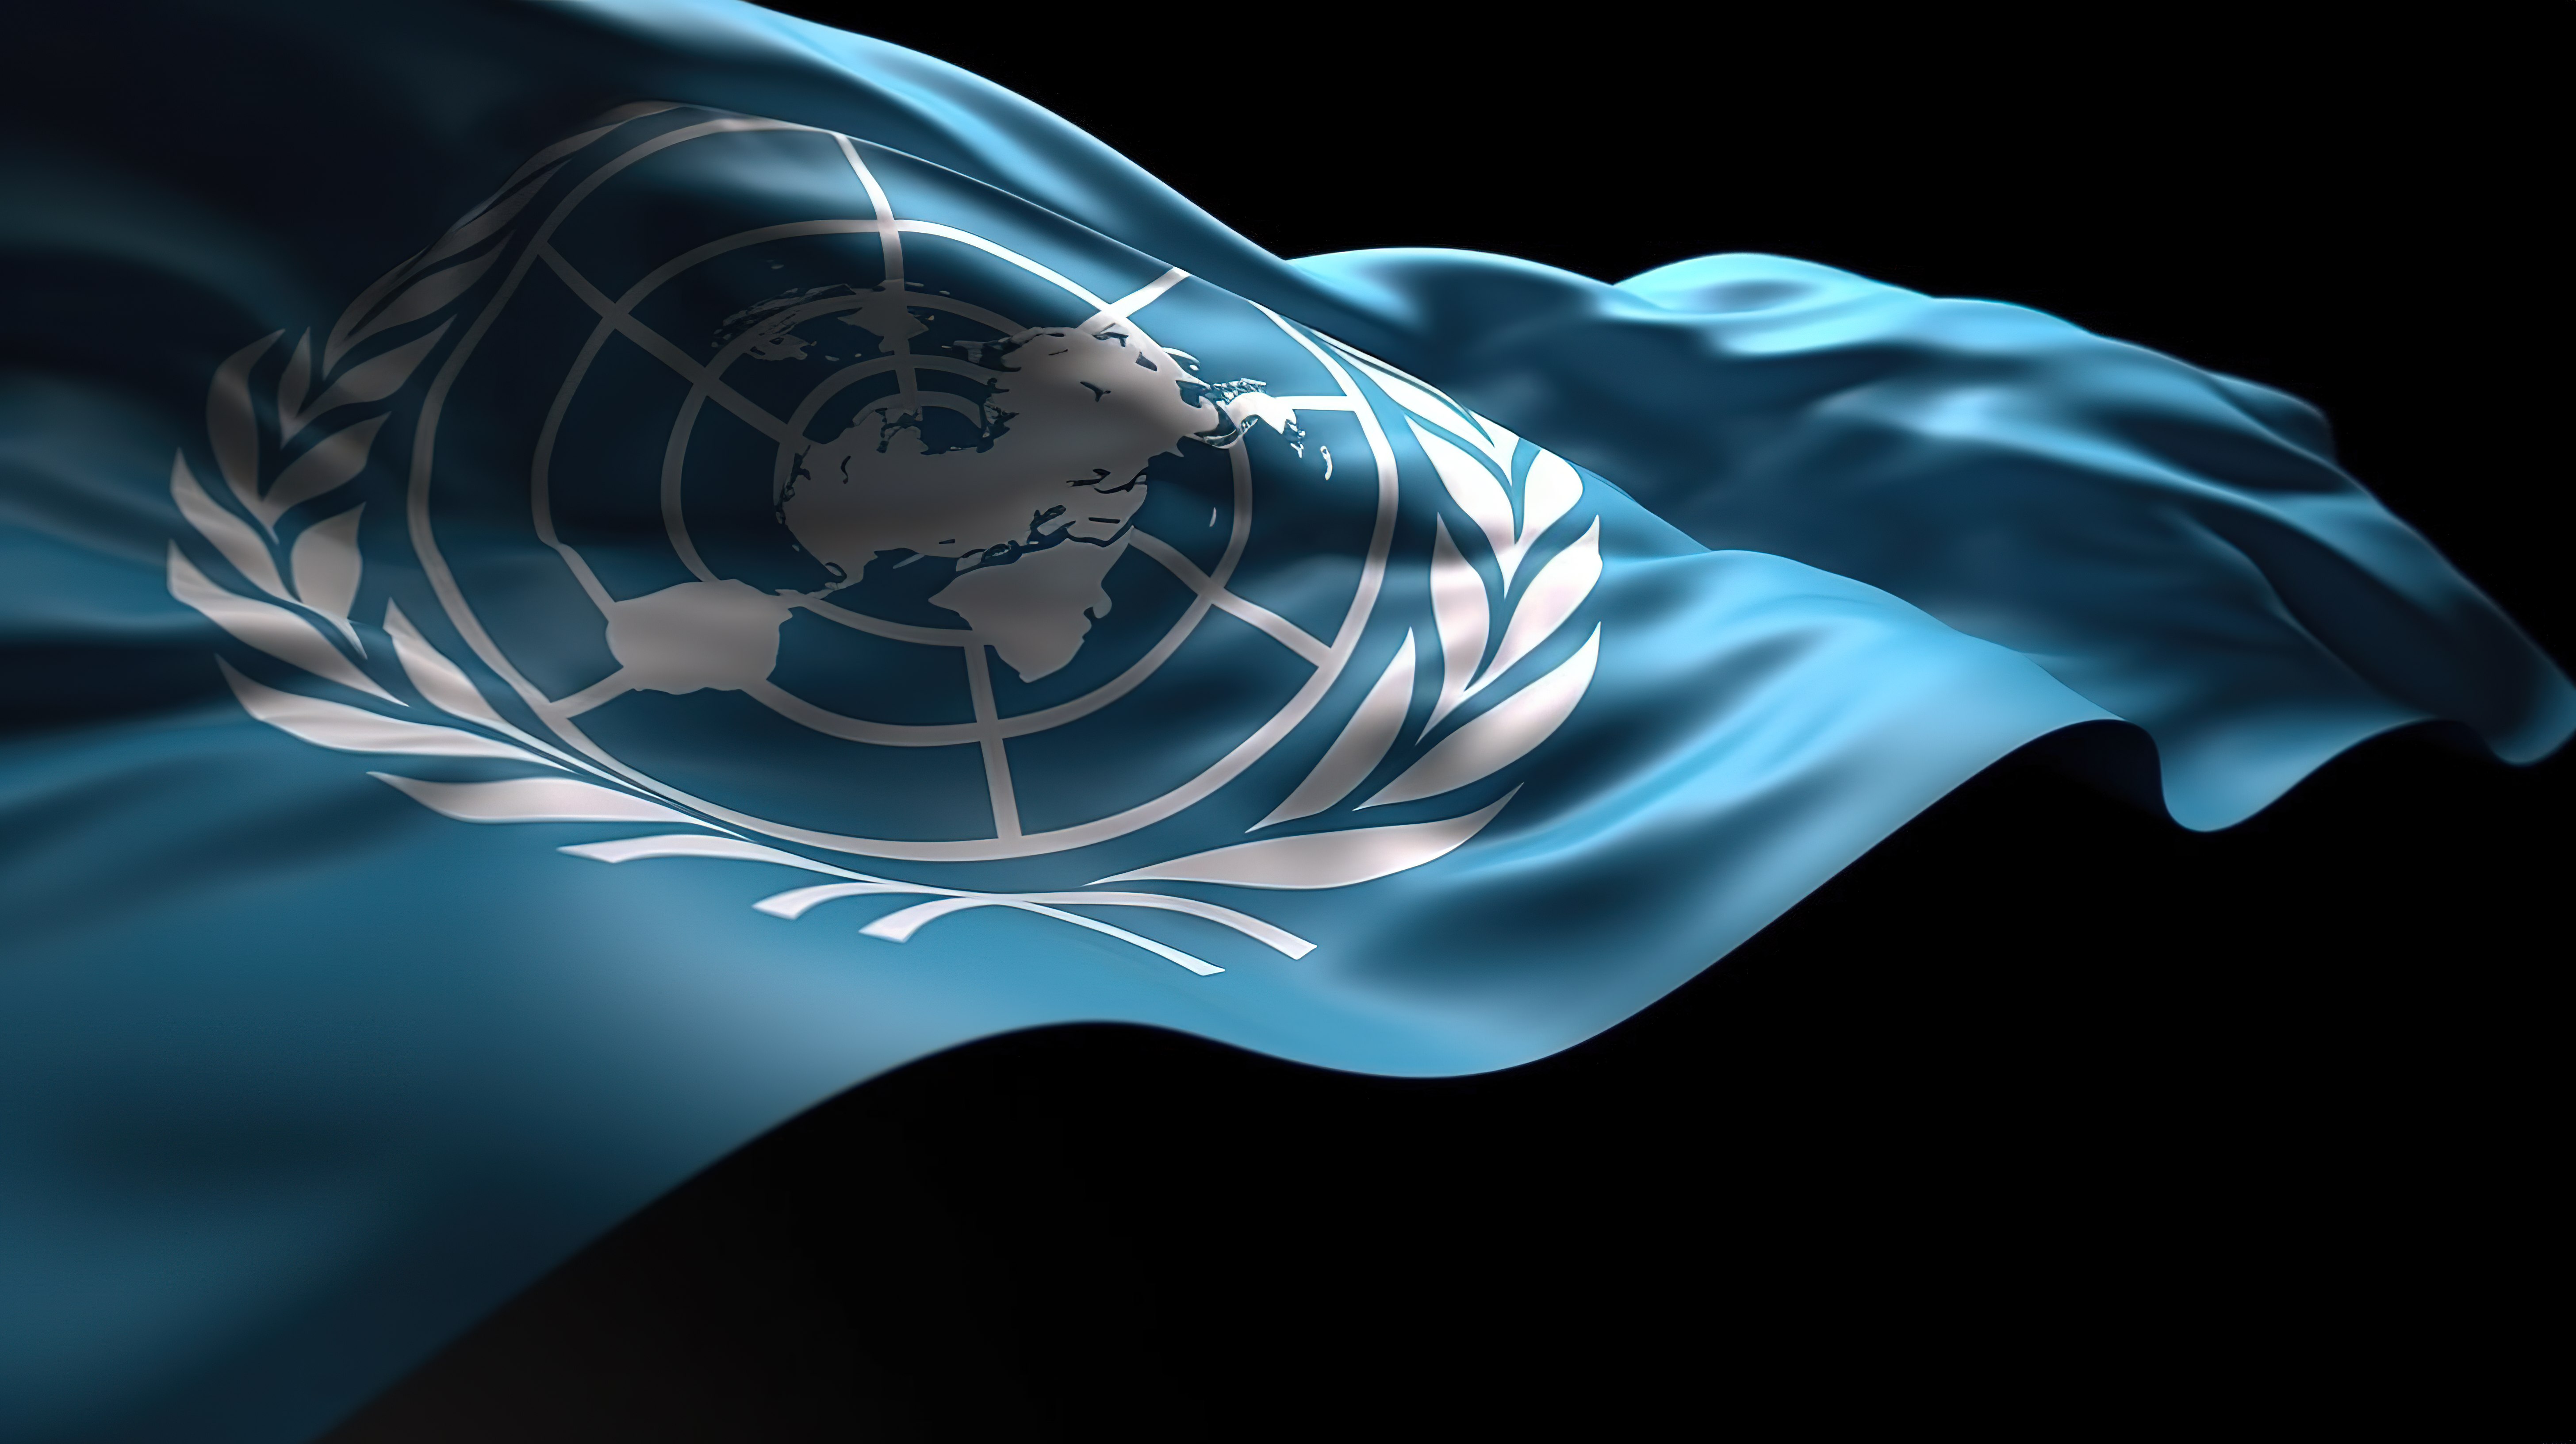 流畅流动的联合国旗帜在华丽的 3D 渲染中随着运动的波浪在风中飘扬图片